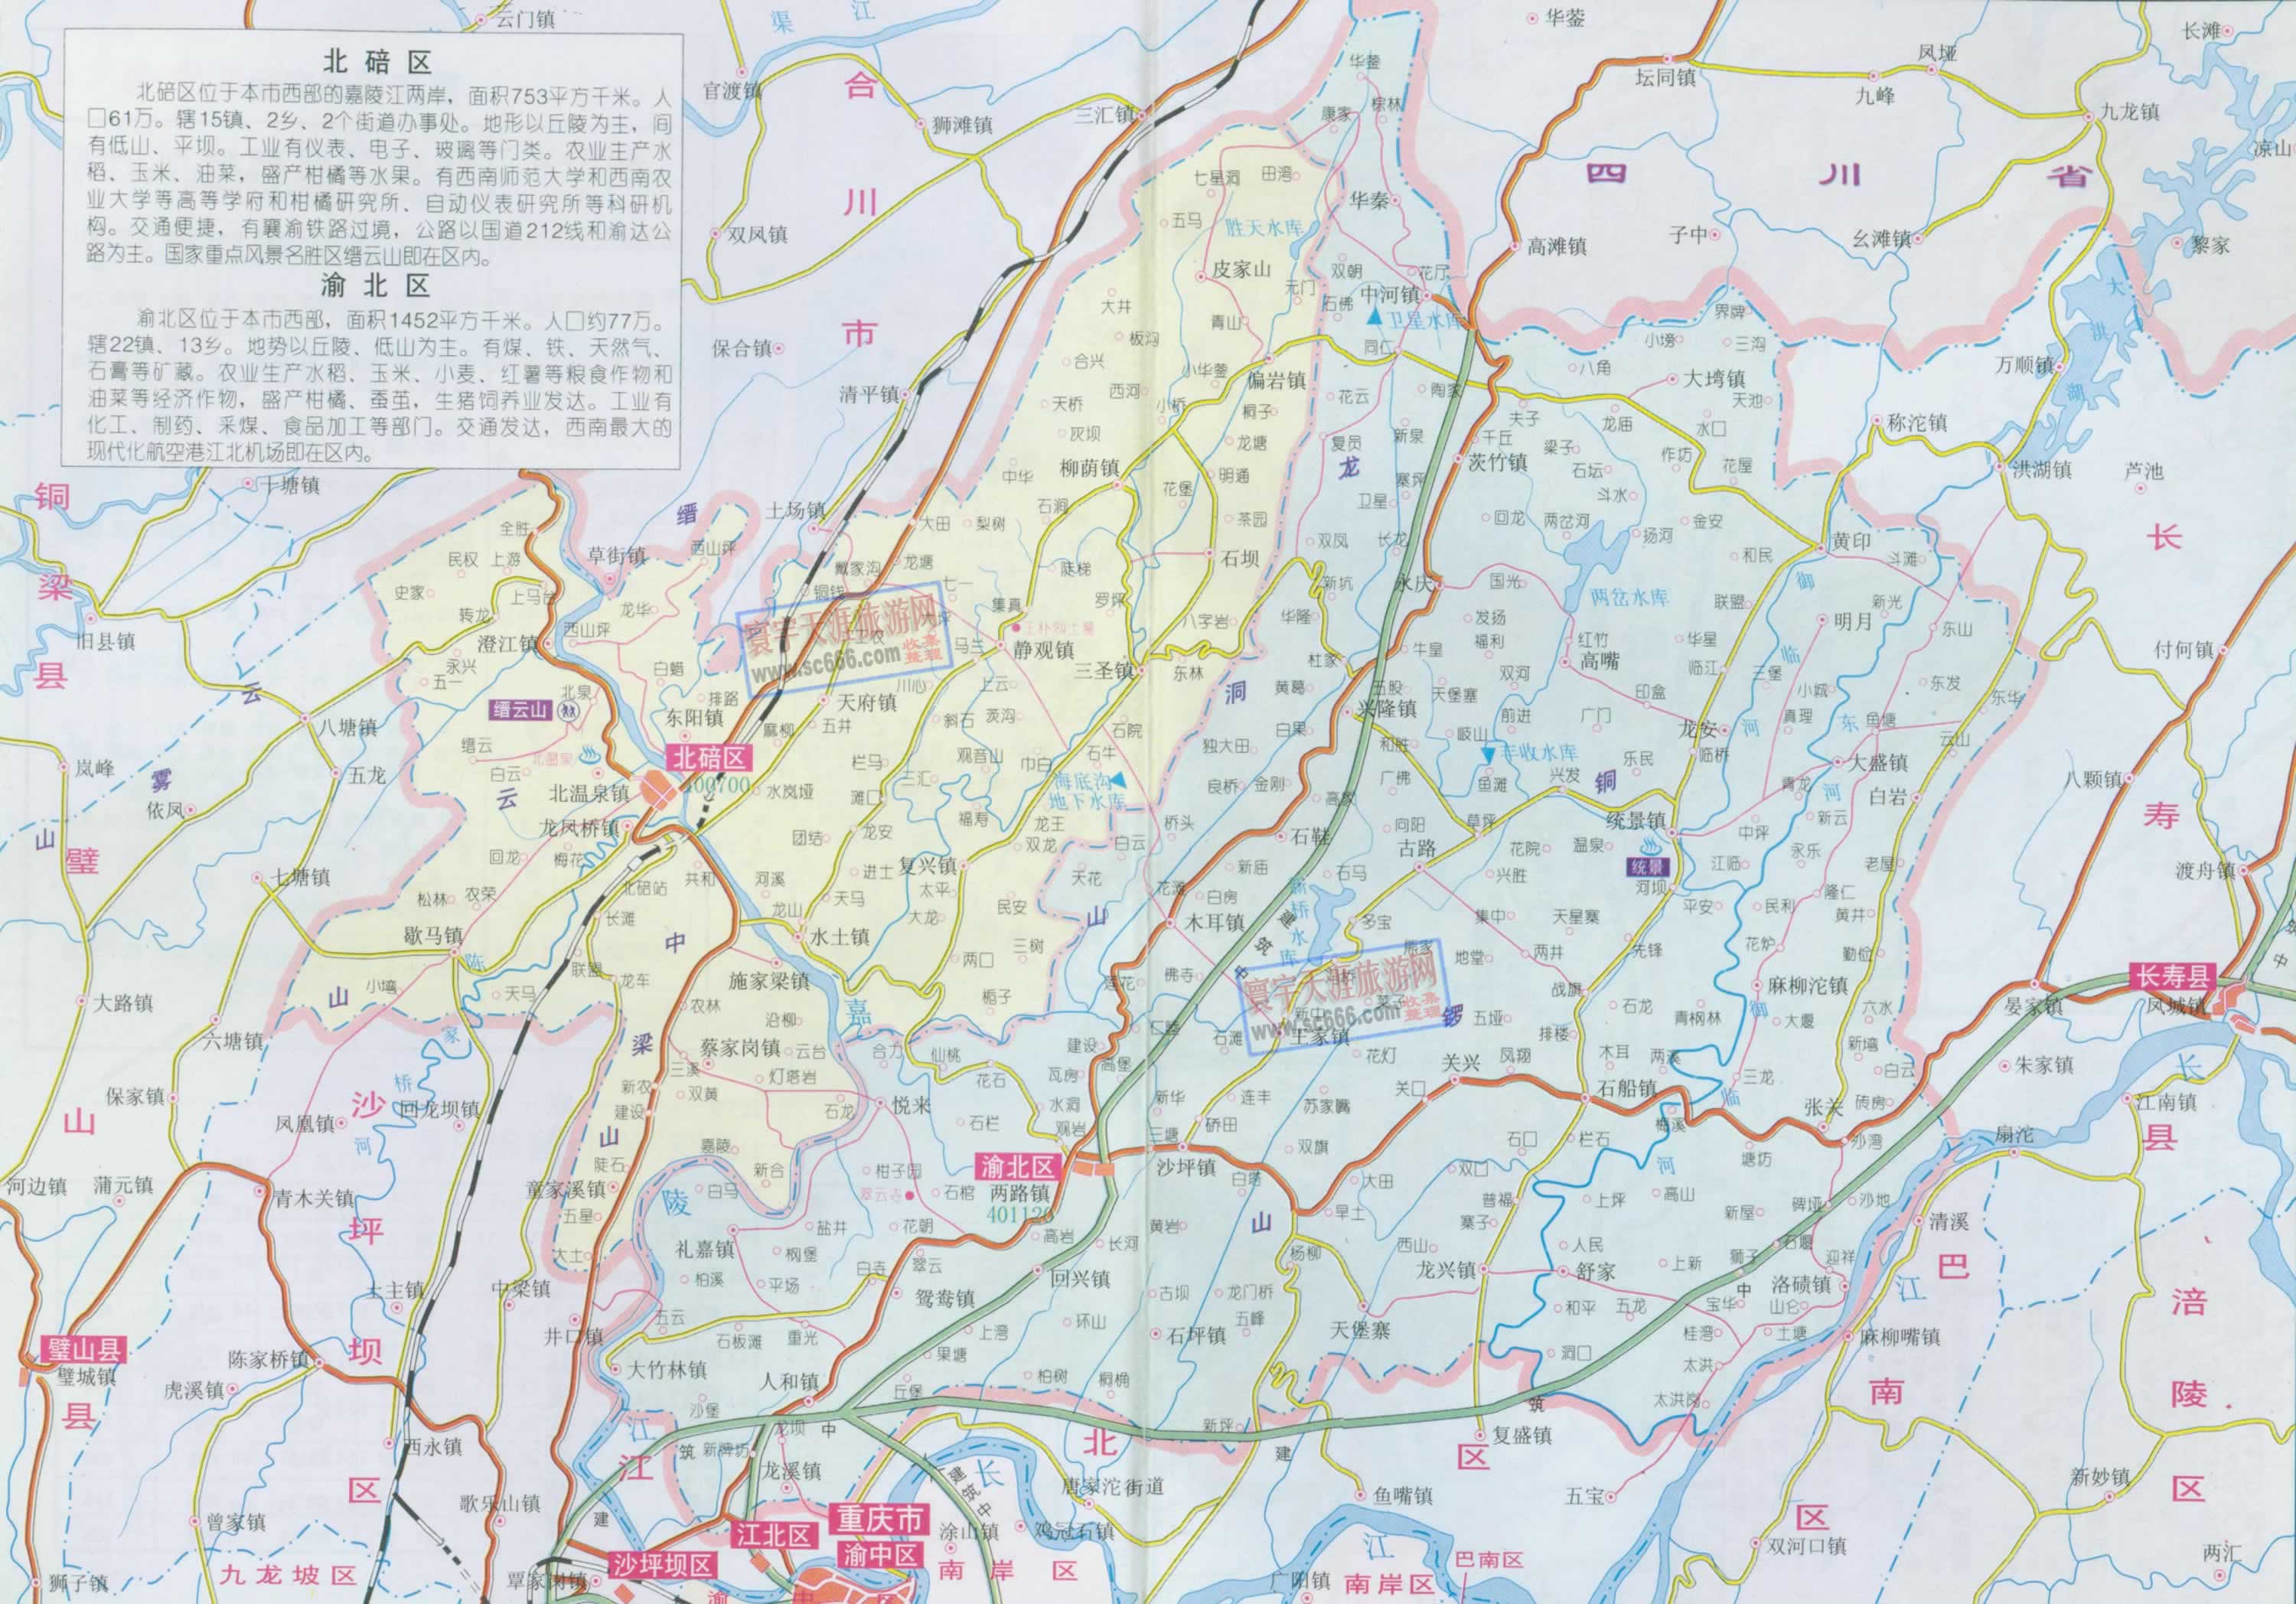 重庆市渝北区地图内容|重庆市渝北区地图图片